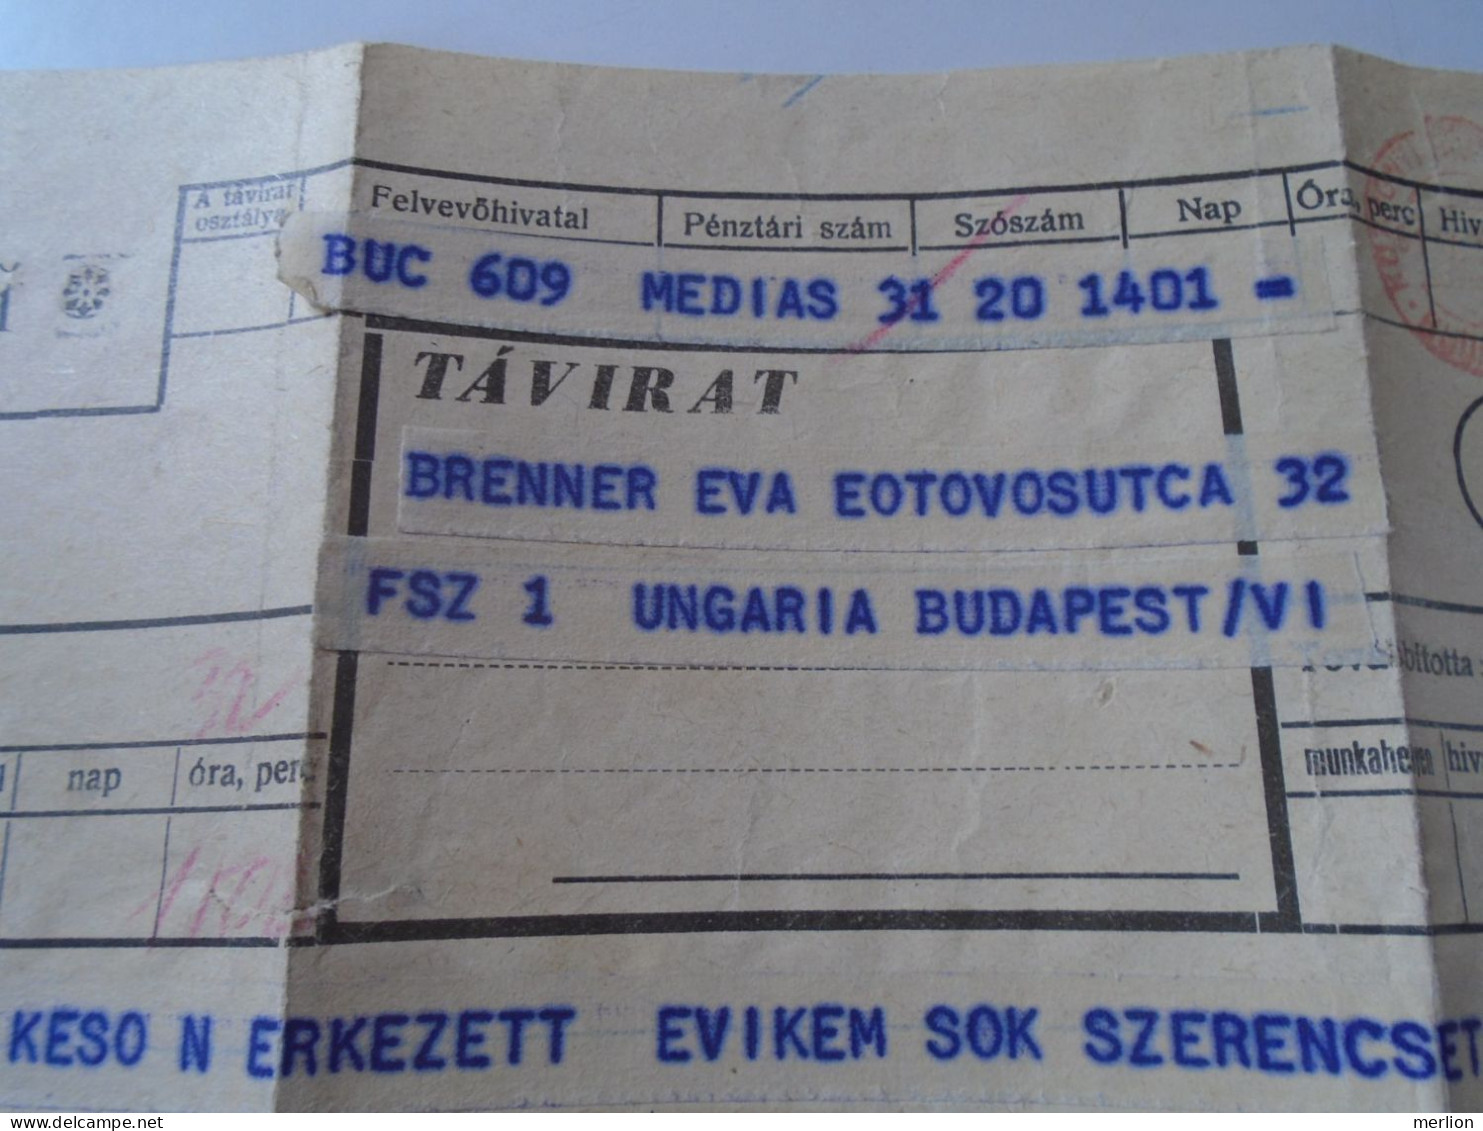 D199203   Hungary  Telegraph Telegram - 1960's   Medias -   - Brenner Budapest - Telegrafi